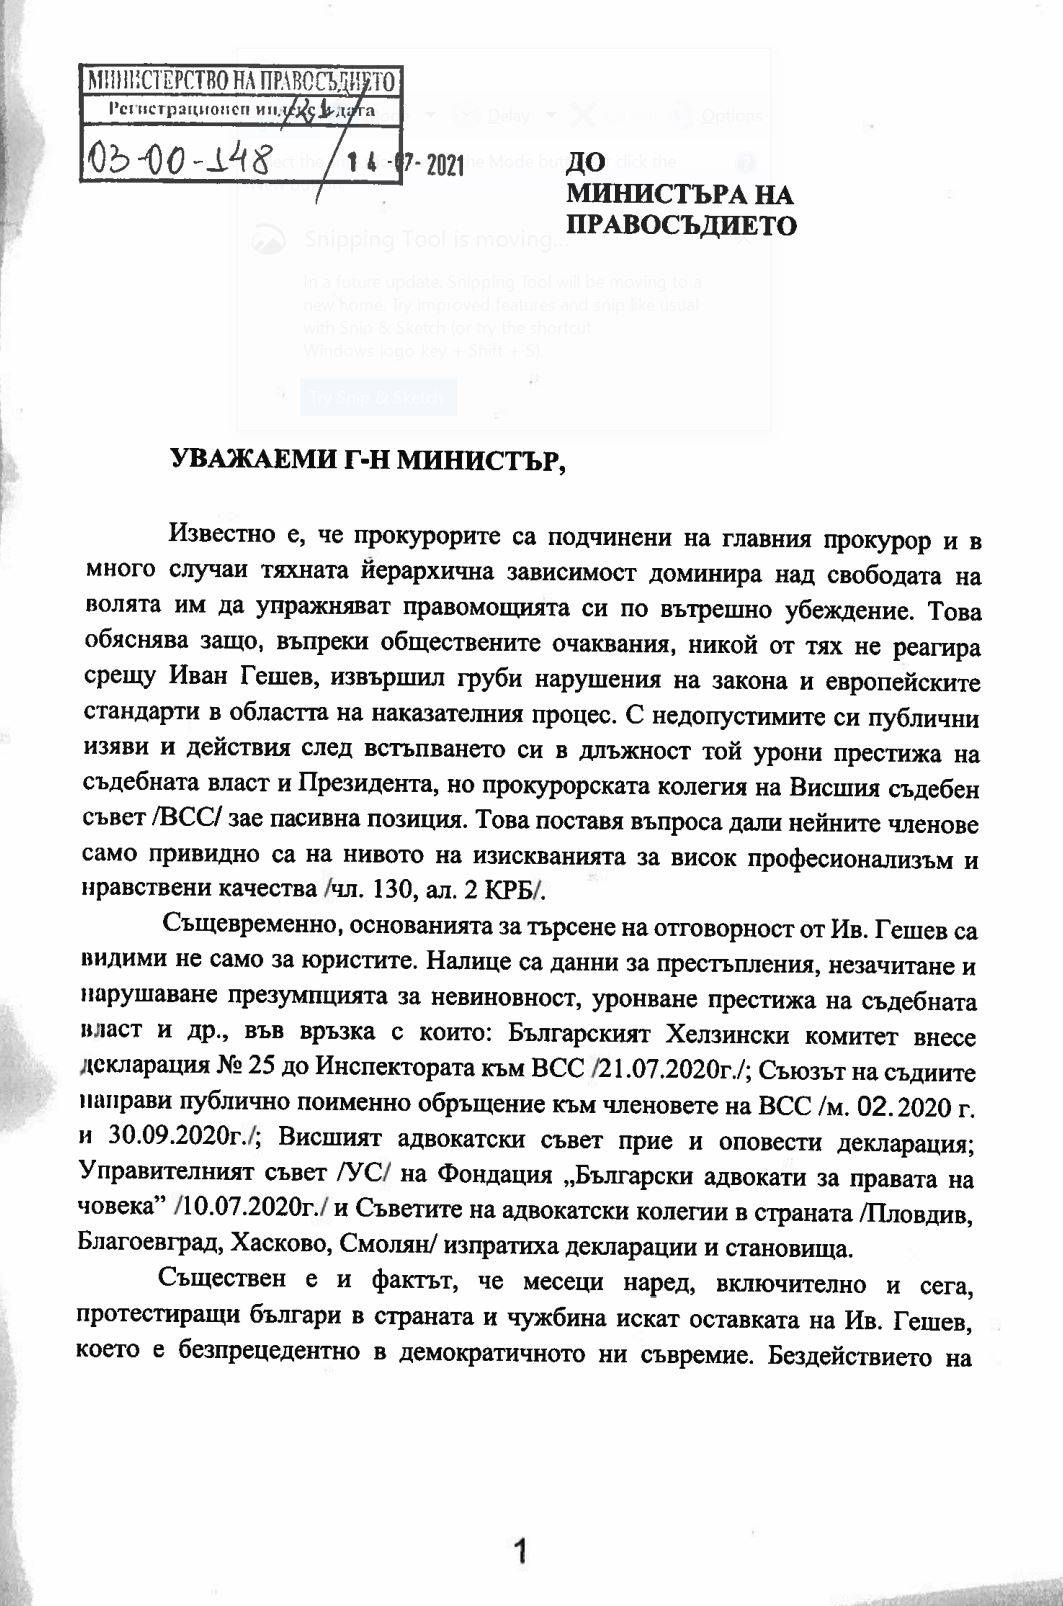 Докладът на Бойко Рашков до Янаки Стоилов